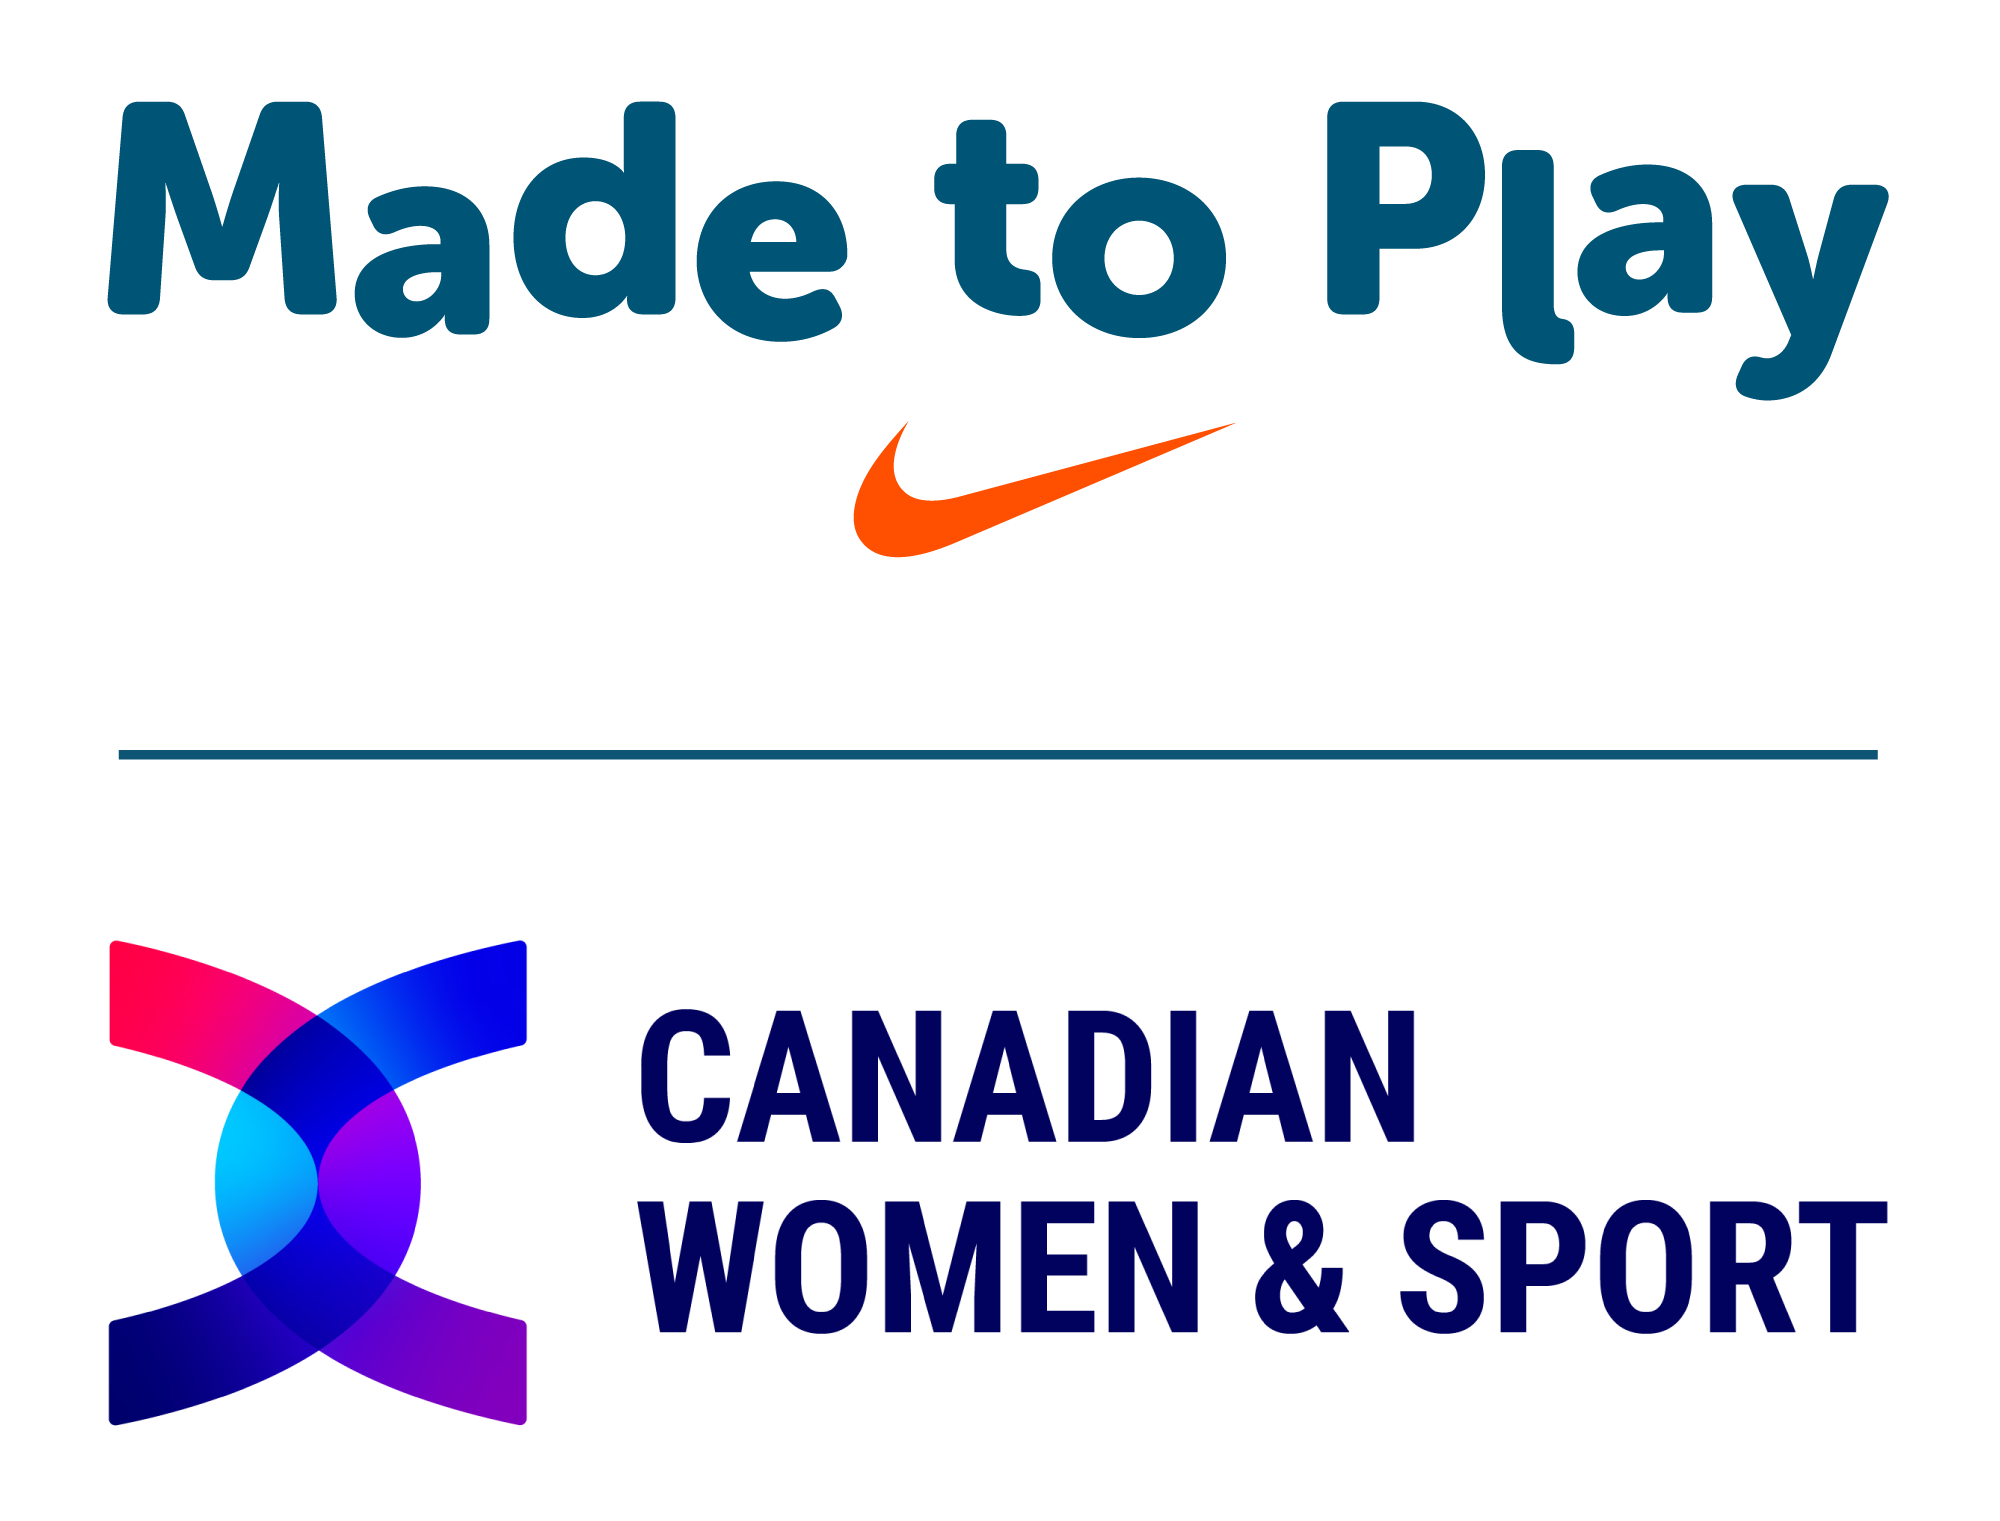 Canadian Women & Sports